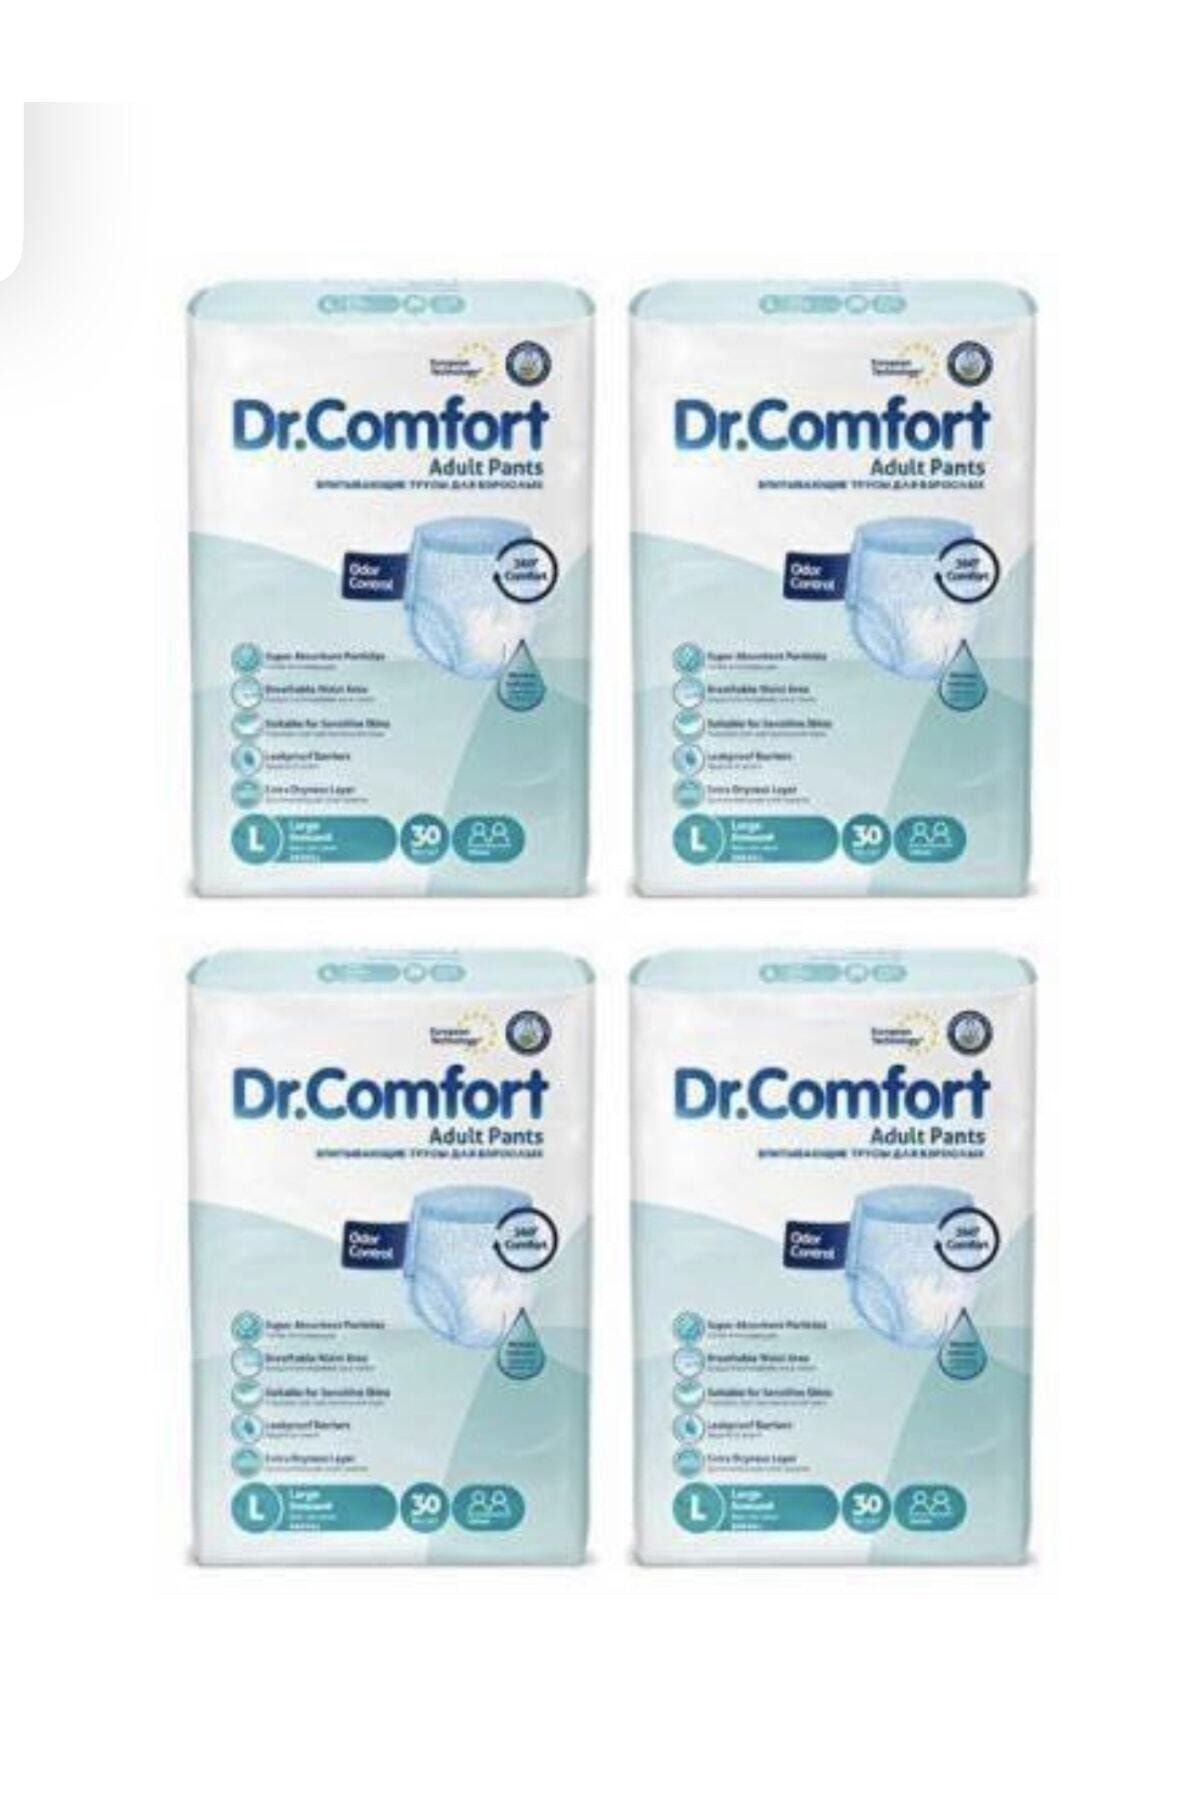 Dr.Comfort Dr Comfort 30 Lu Large Külot Bez Büyük Boy 4 Paket 120 Adet